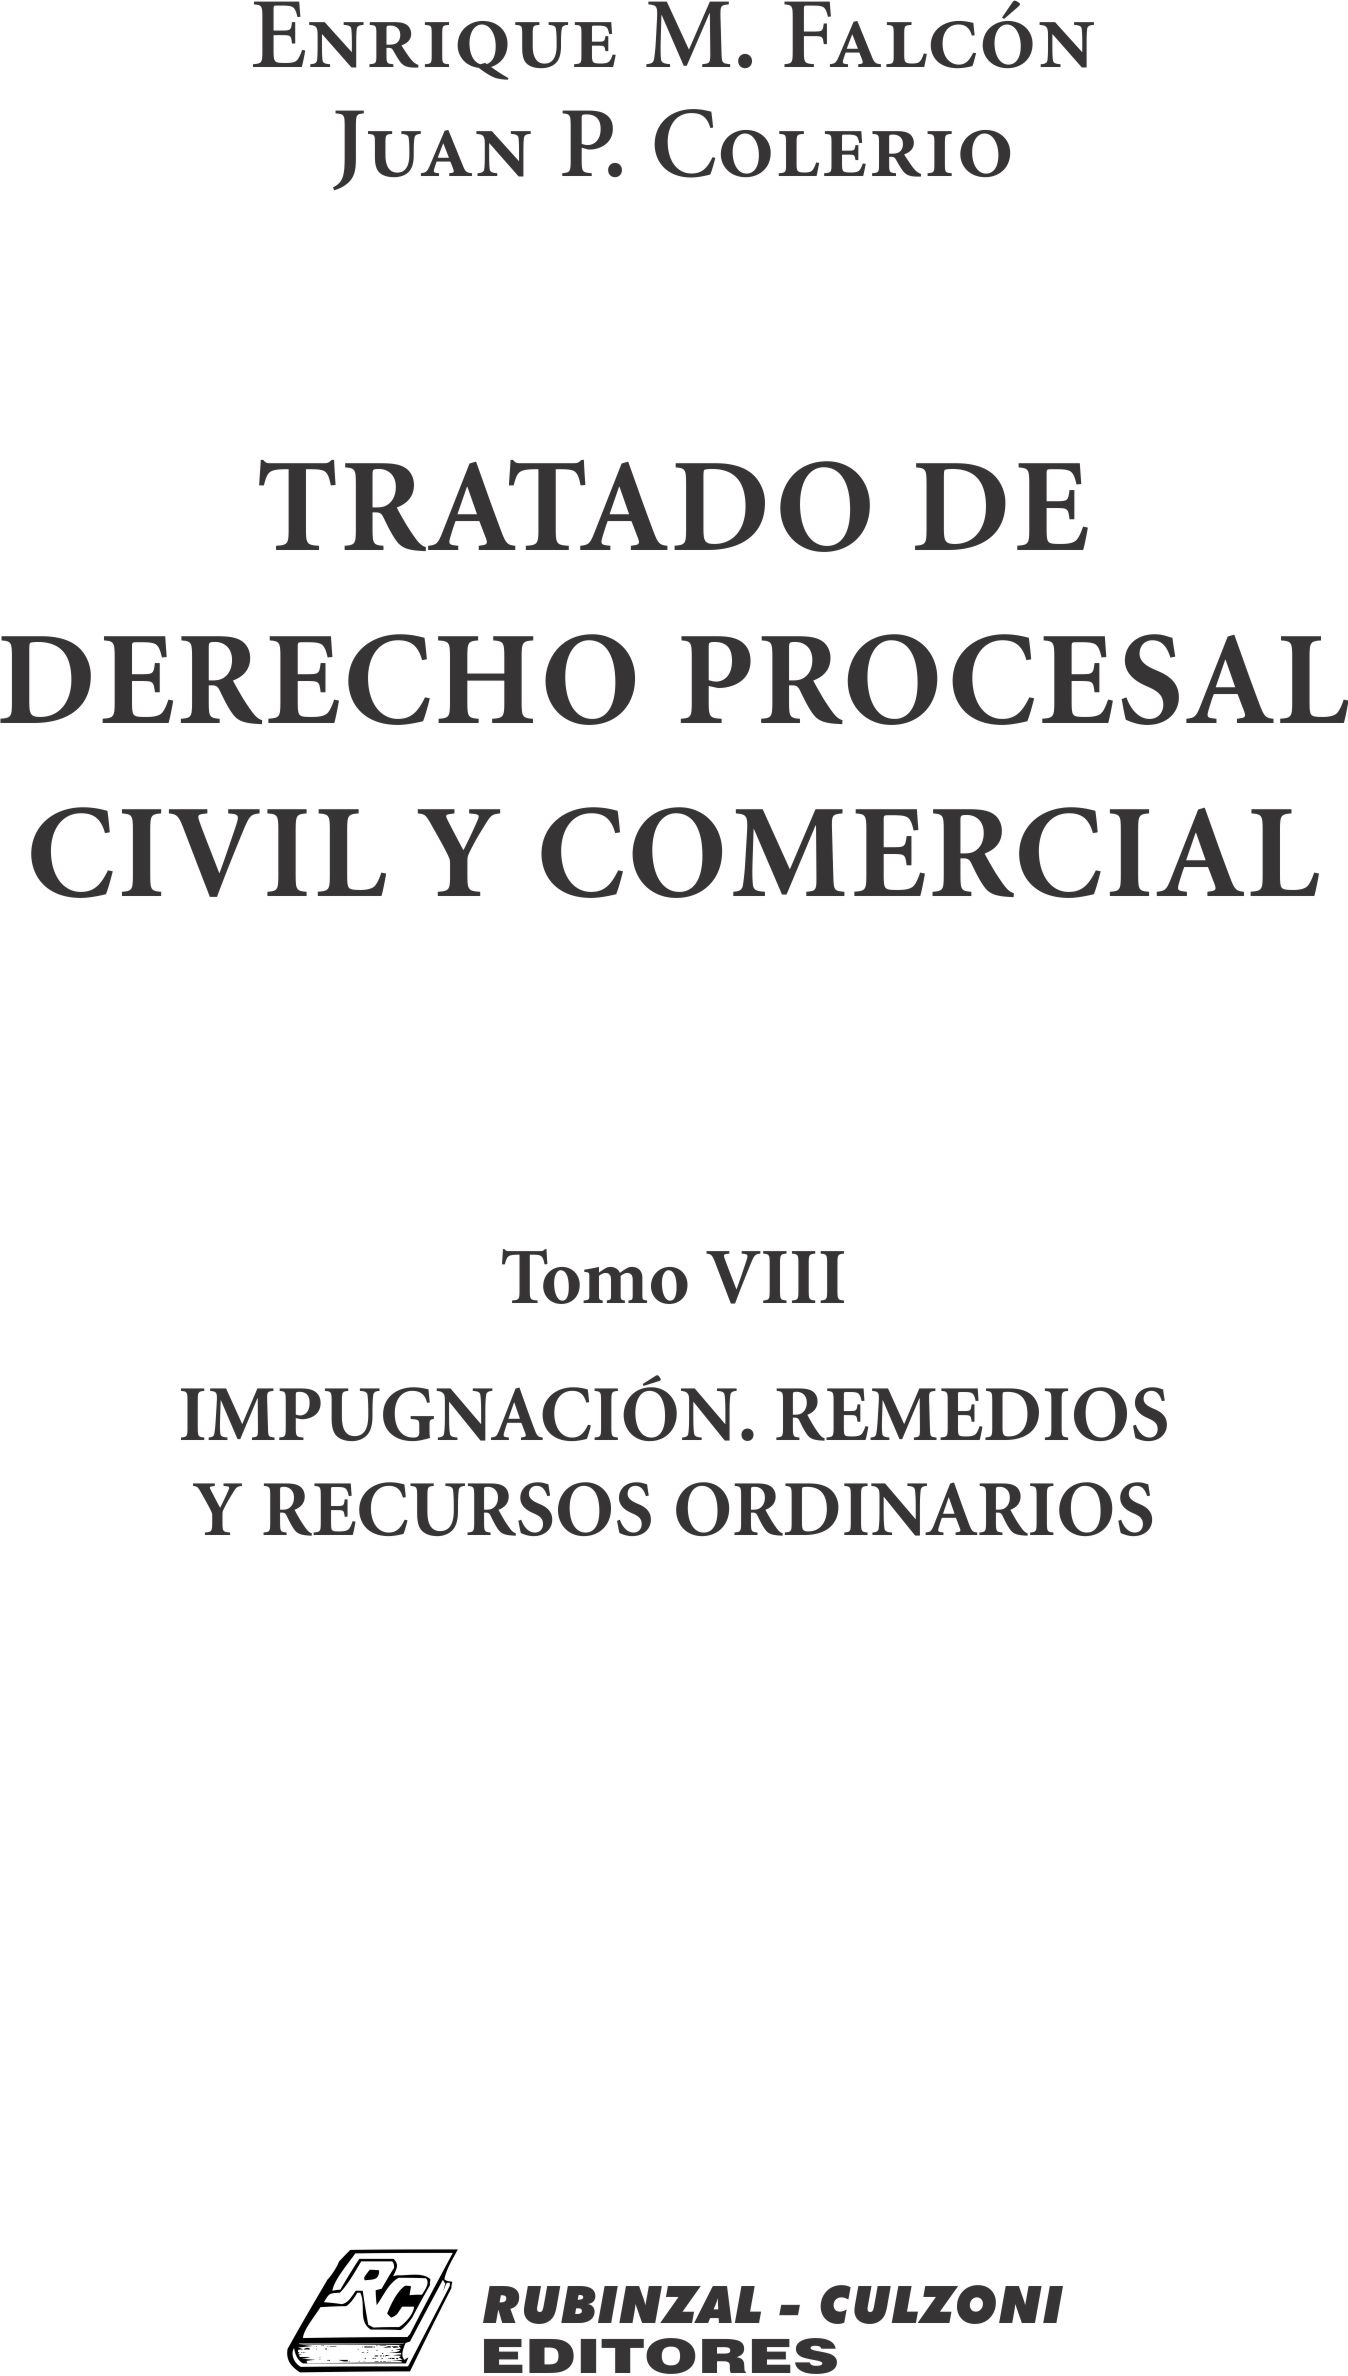 Tratado de Derecho Procesal Civil y Comercial. - Tomo VIII. Impugnación. Remedios y recursos ordinarios.